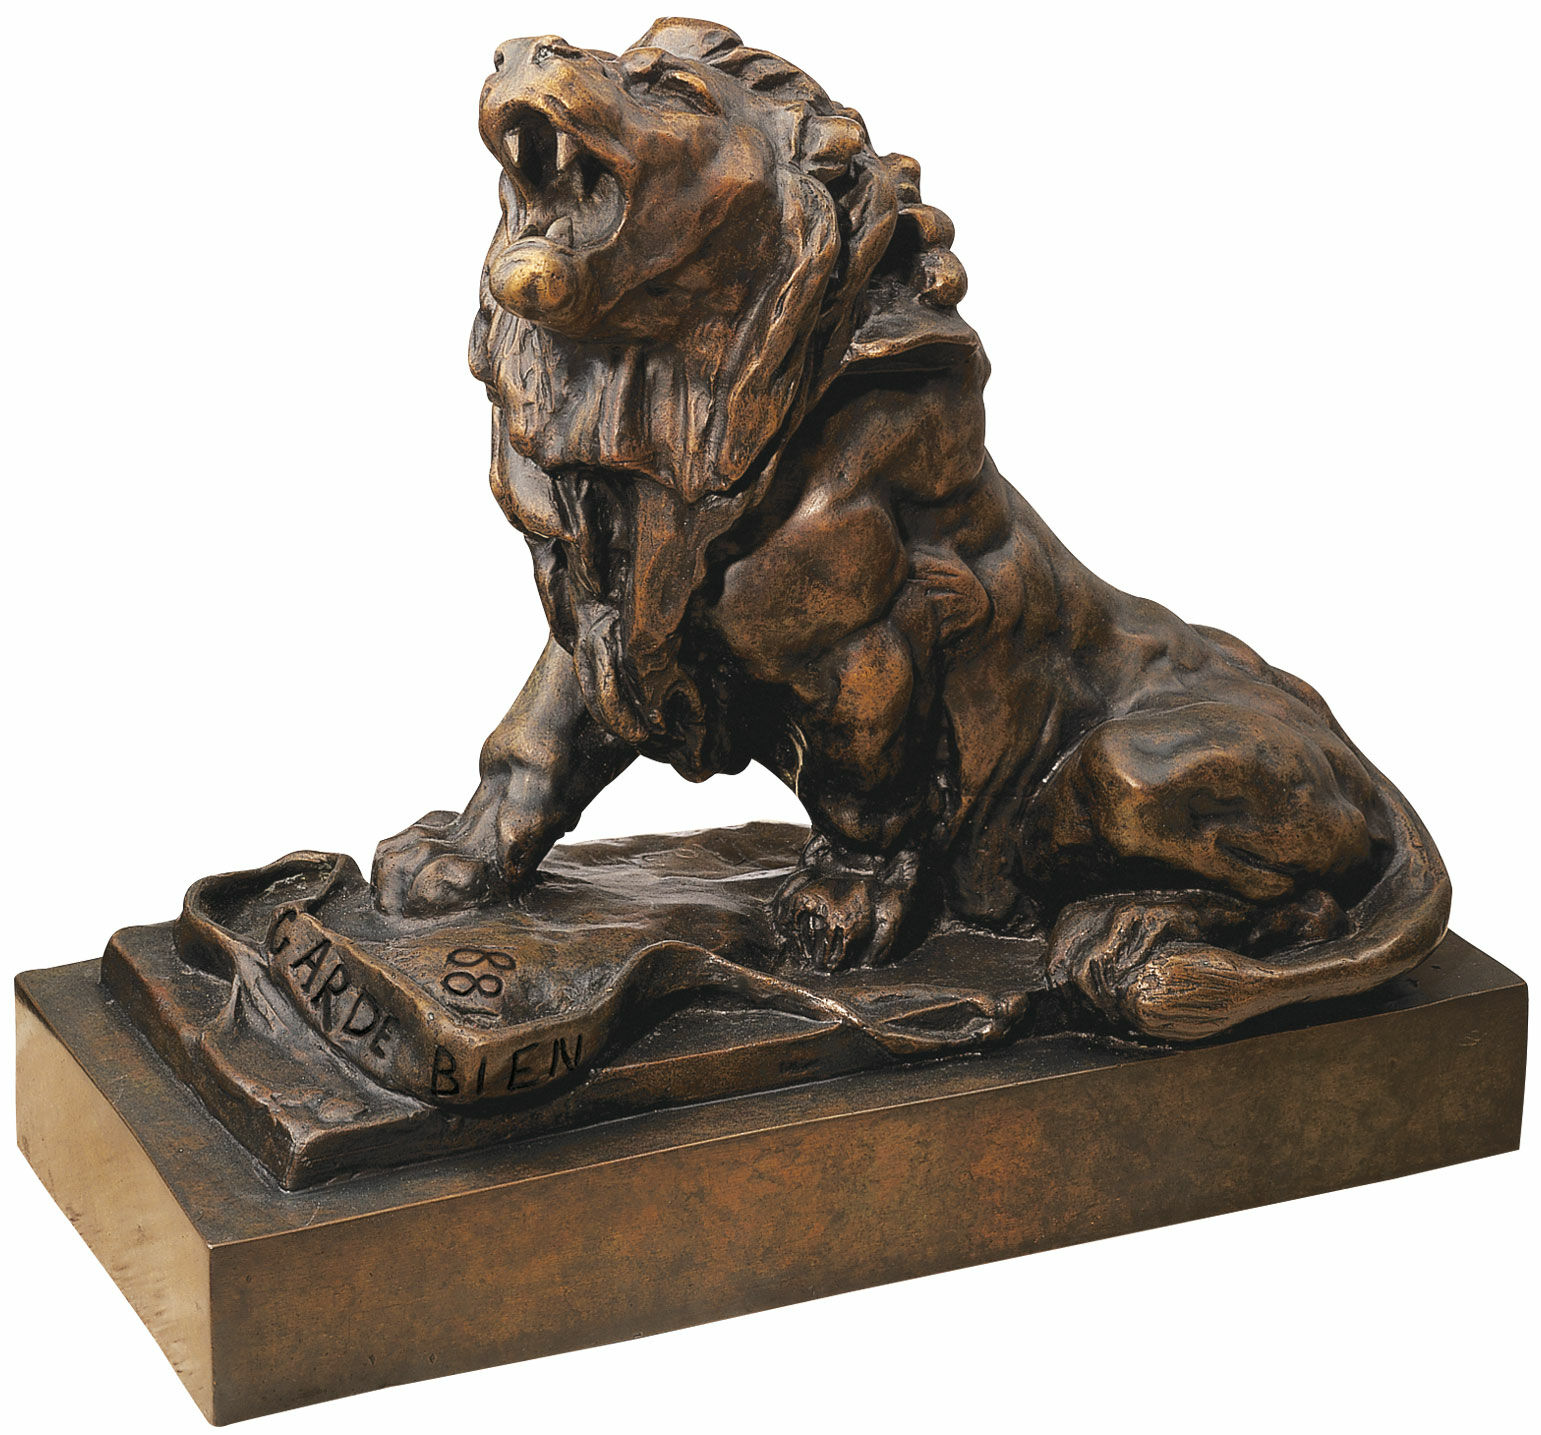 Skulptur "Den grædende løve" (Le lion qui pleure), version i bundet bronze von Auguste Rodin